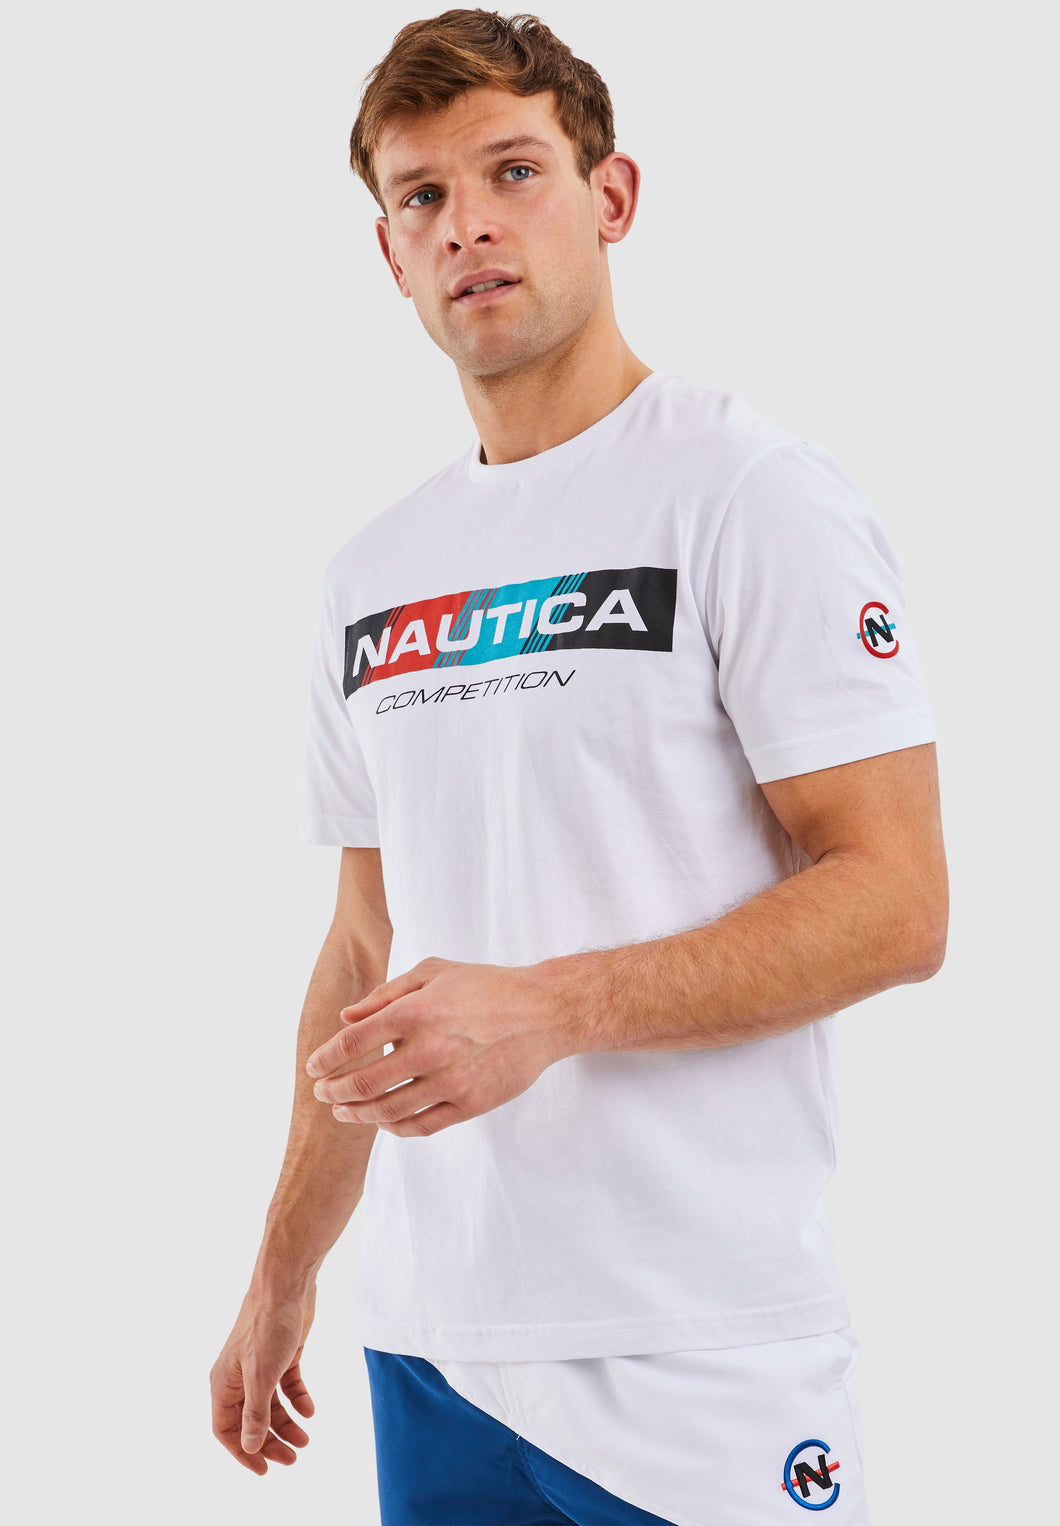 Polacca T-Shirt - White